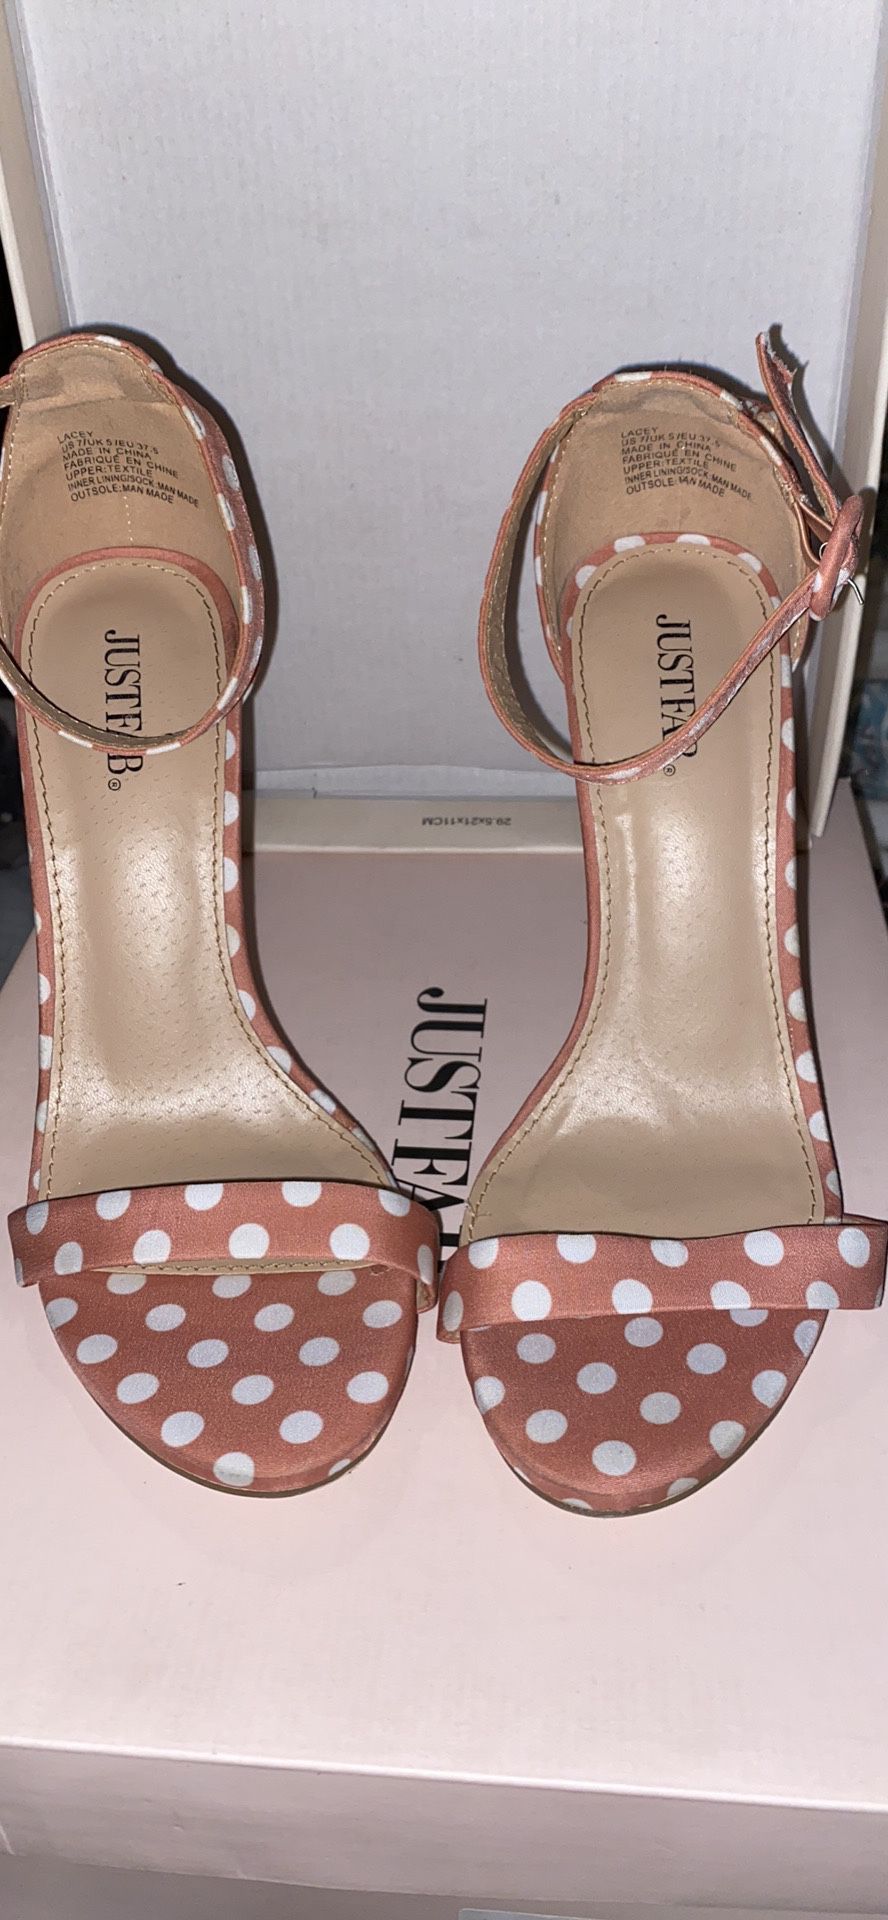 Justfab size 7 heels